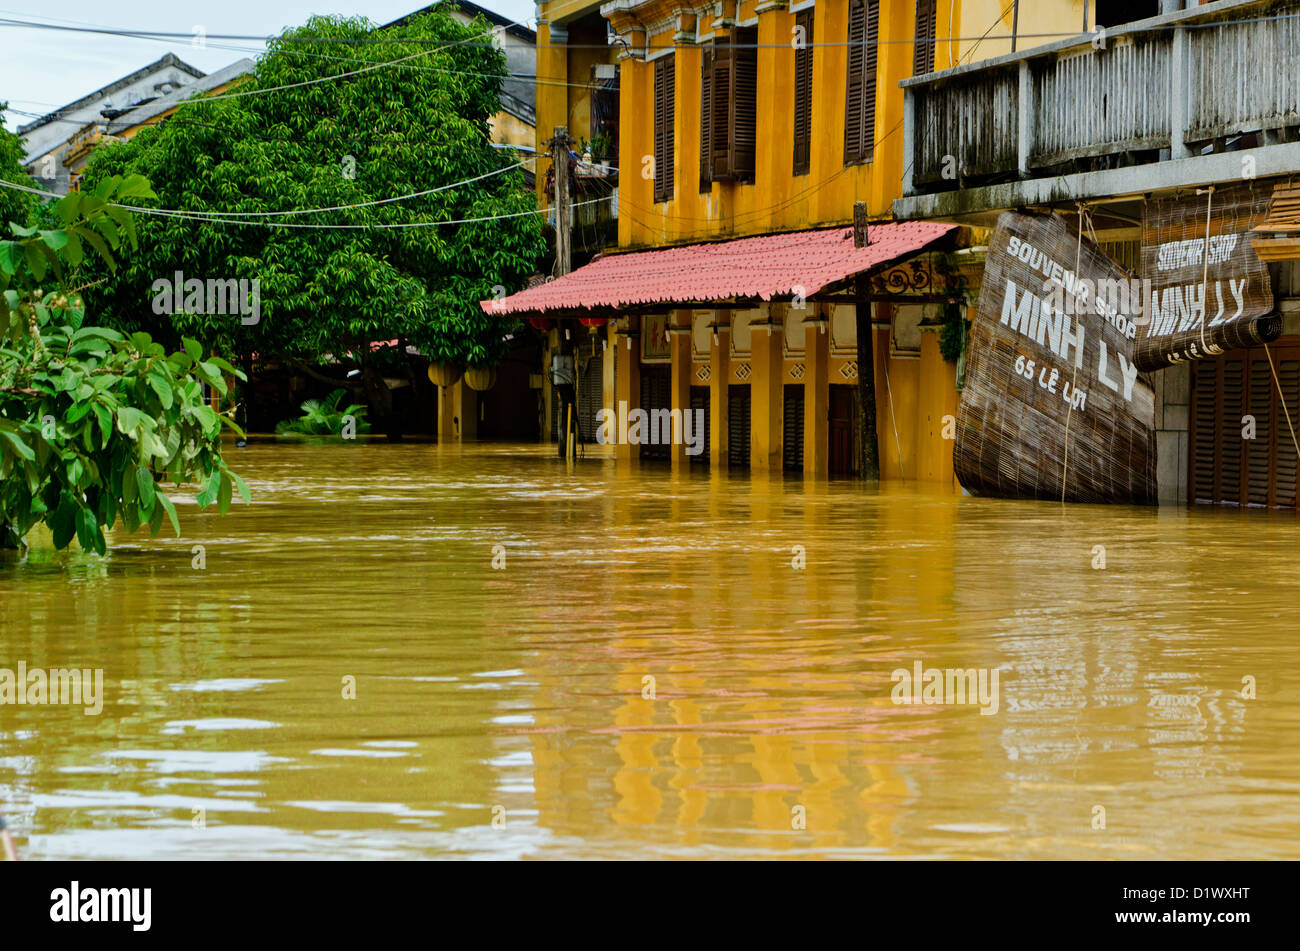 La rue inondée, Hoi An, Vietnam Banque D'Images